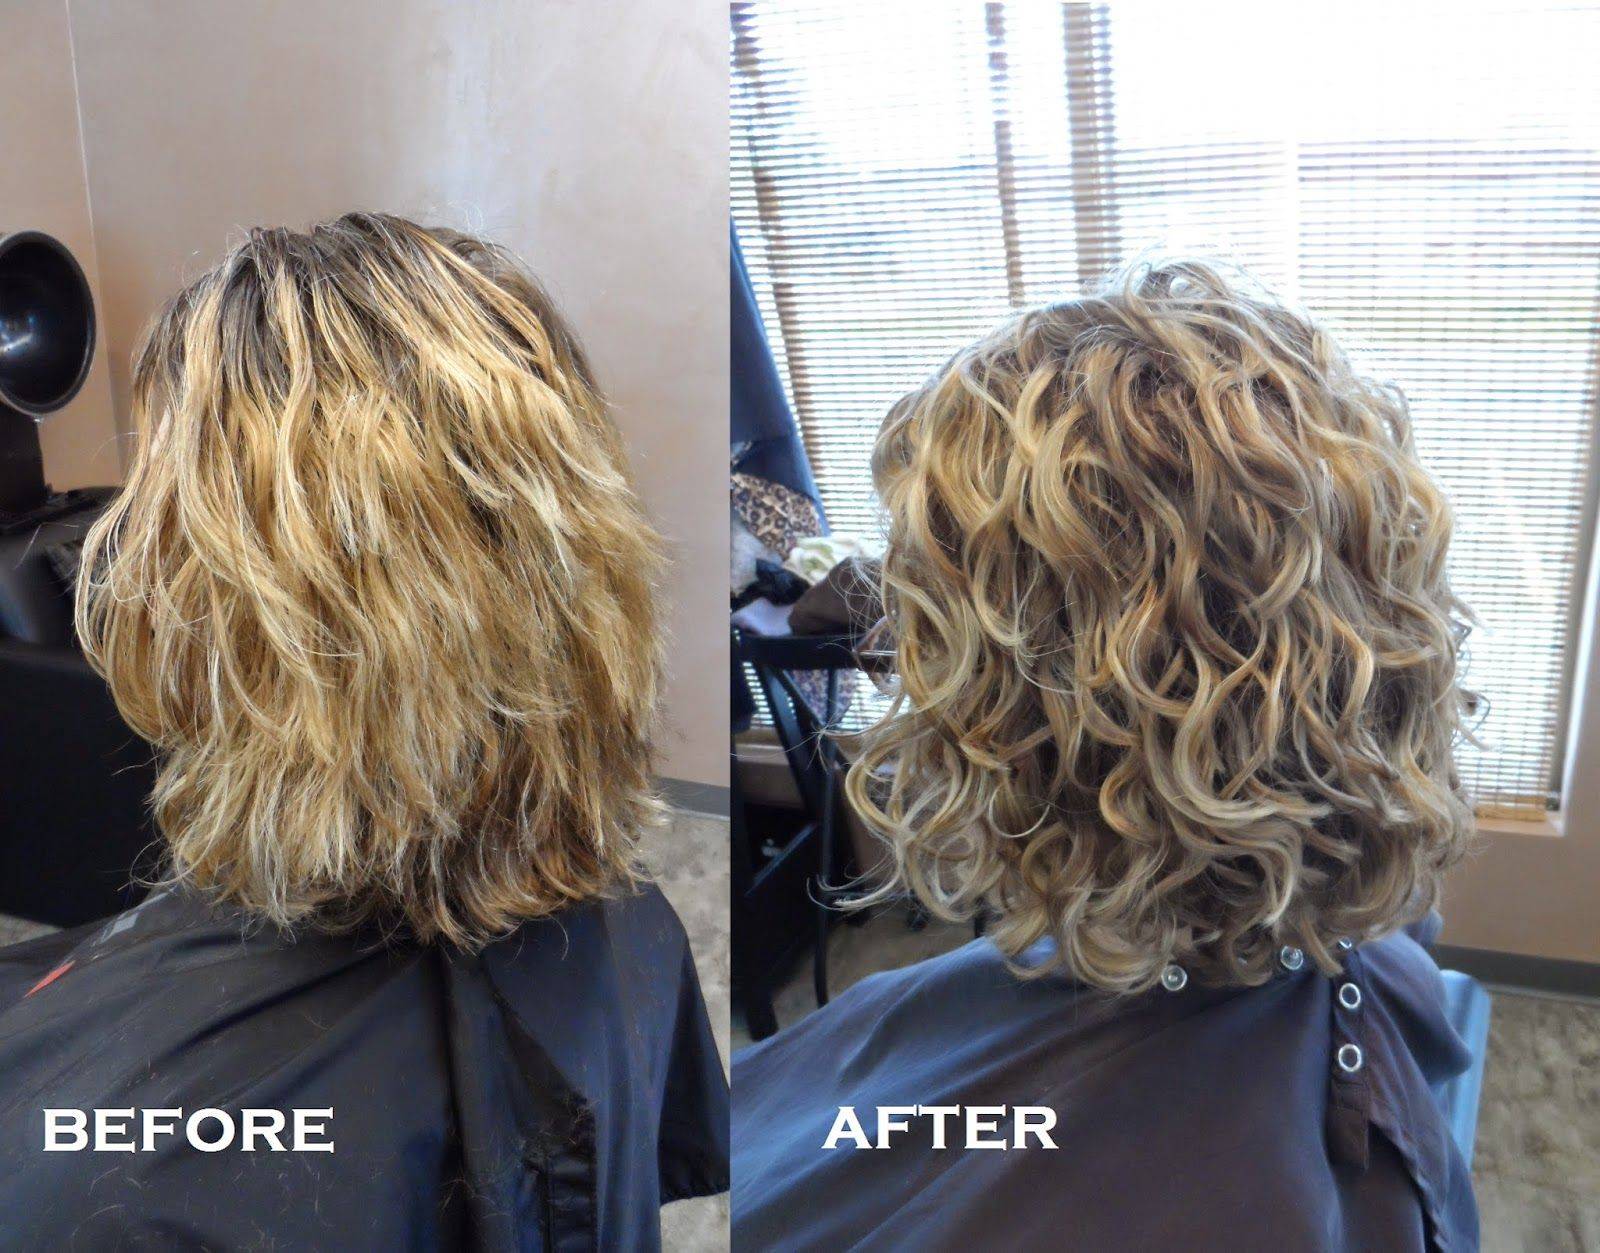 Биозавивка волос – фото до и после: на средние волосы локоны
биозавивка волос: стоит ли игра свеч? — модная дама